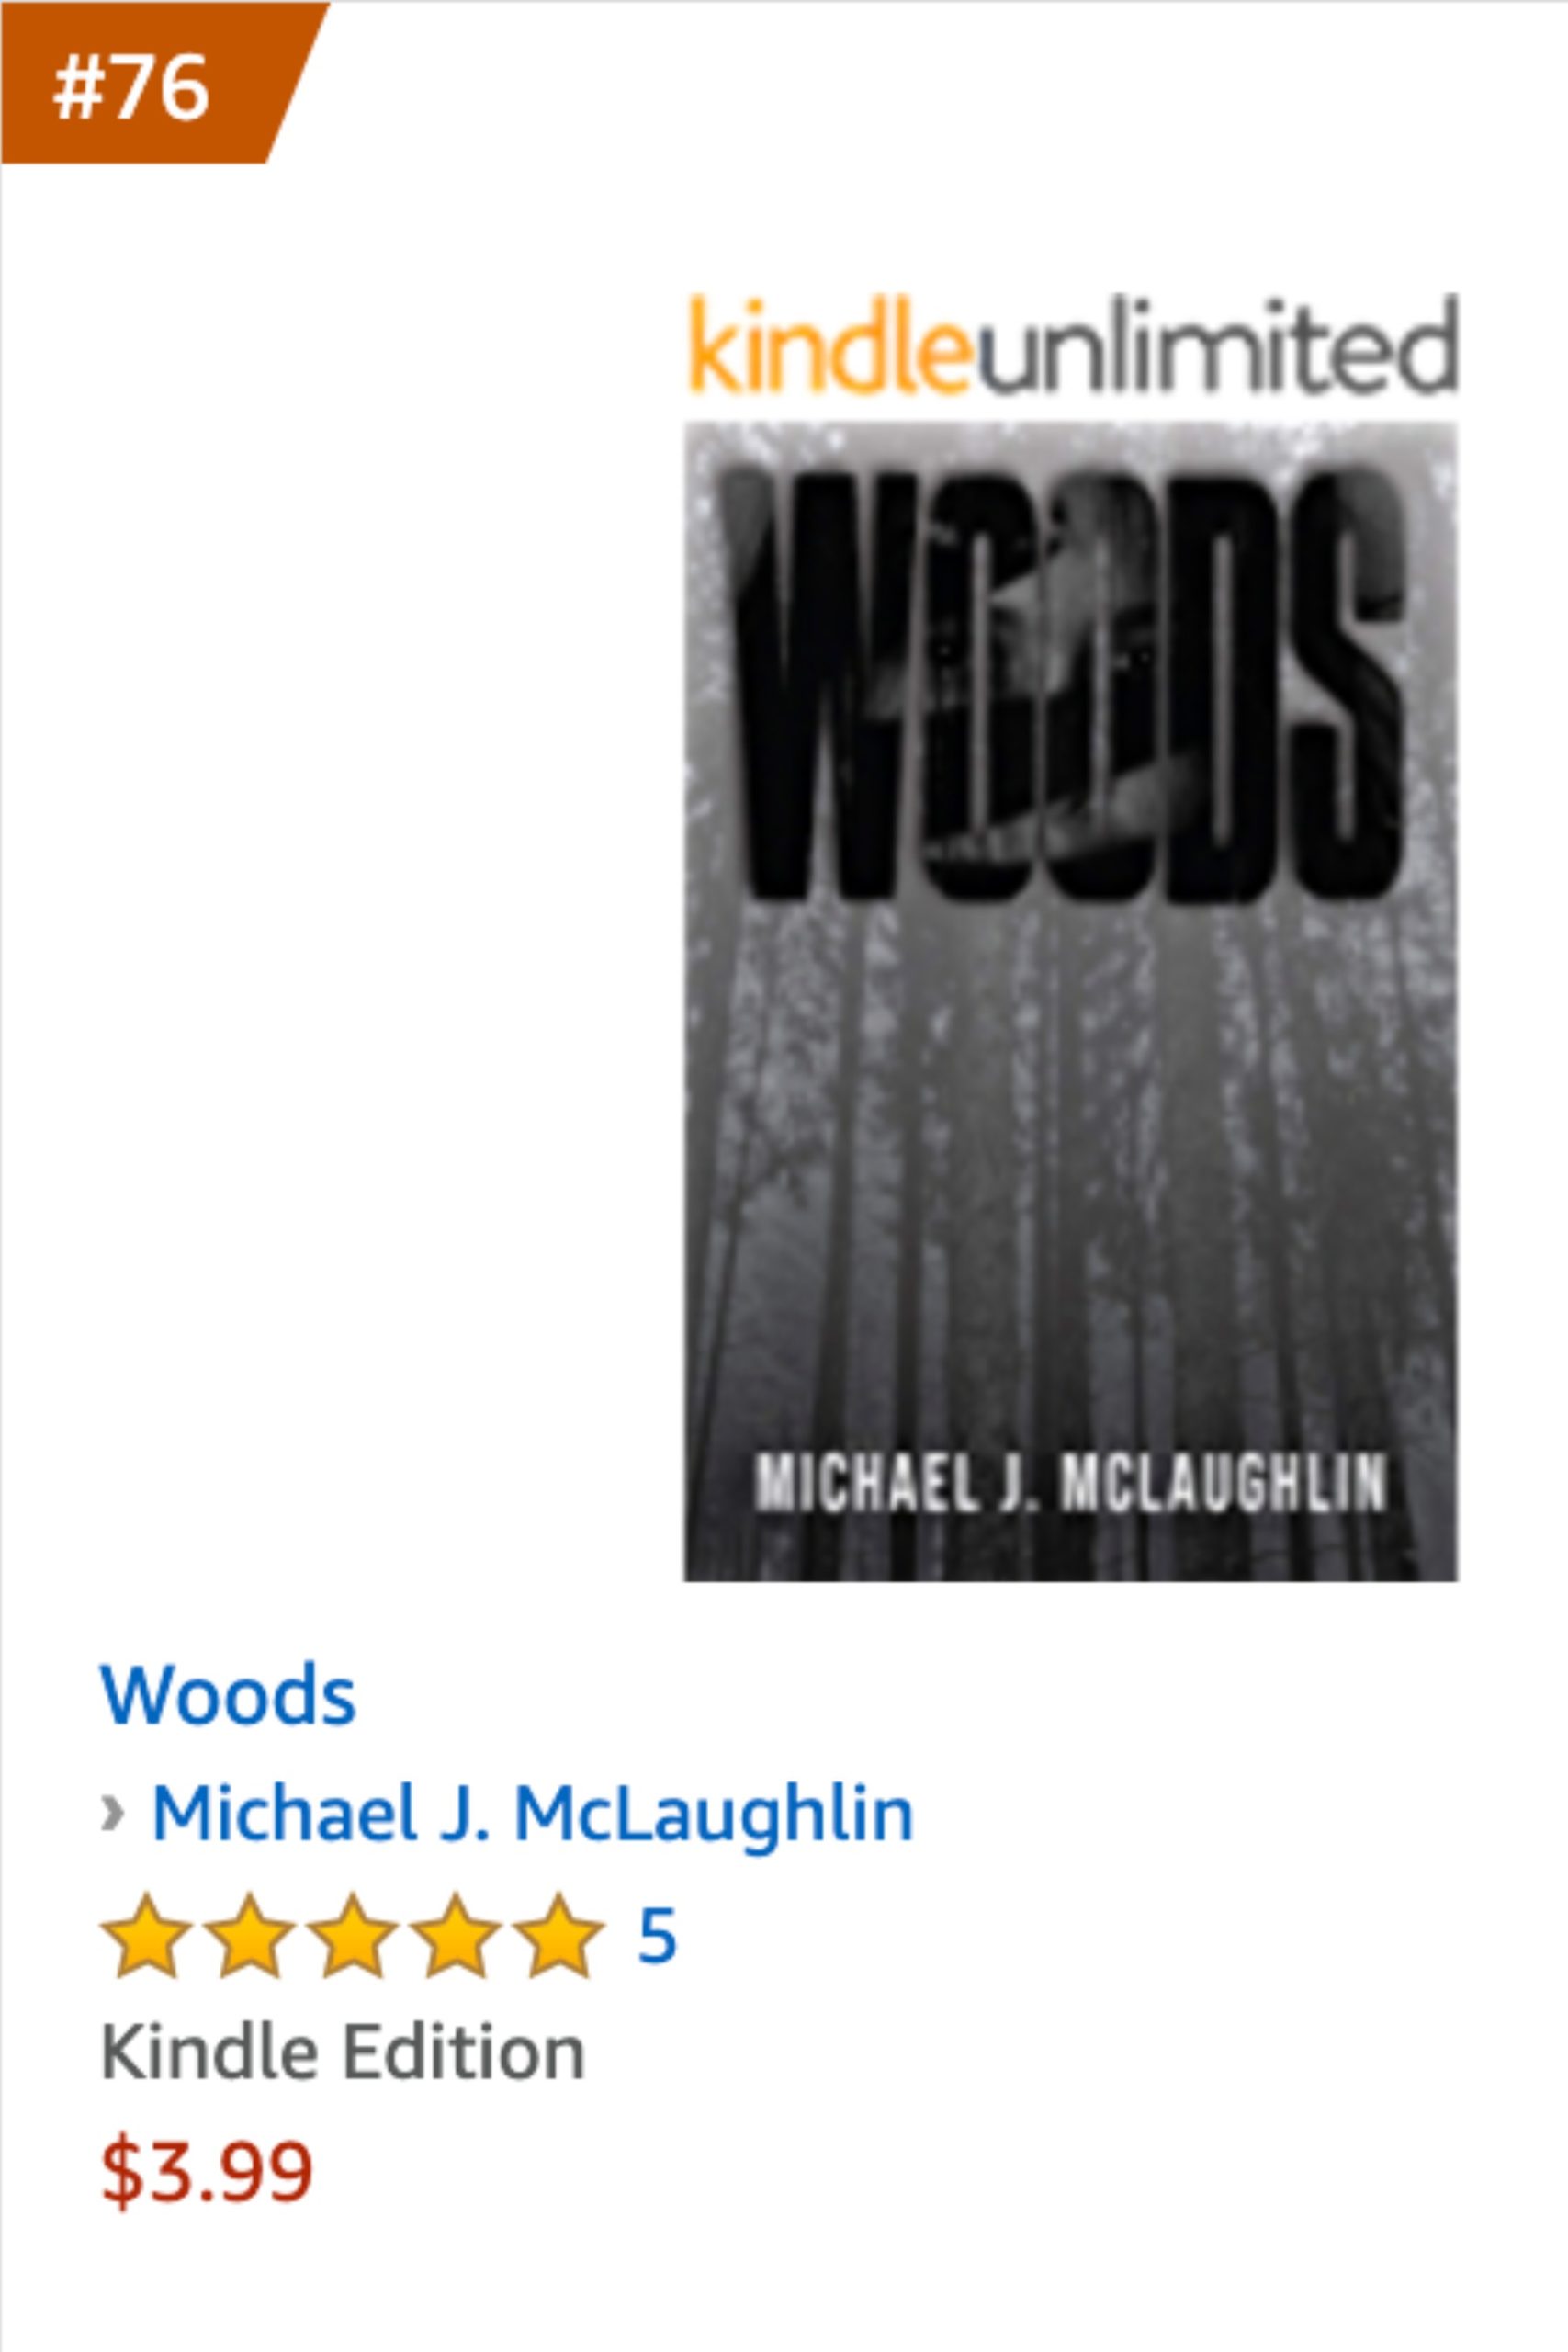 Woods on Amazon Best Seller List